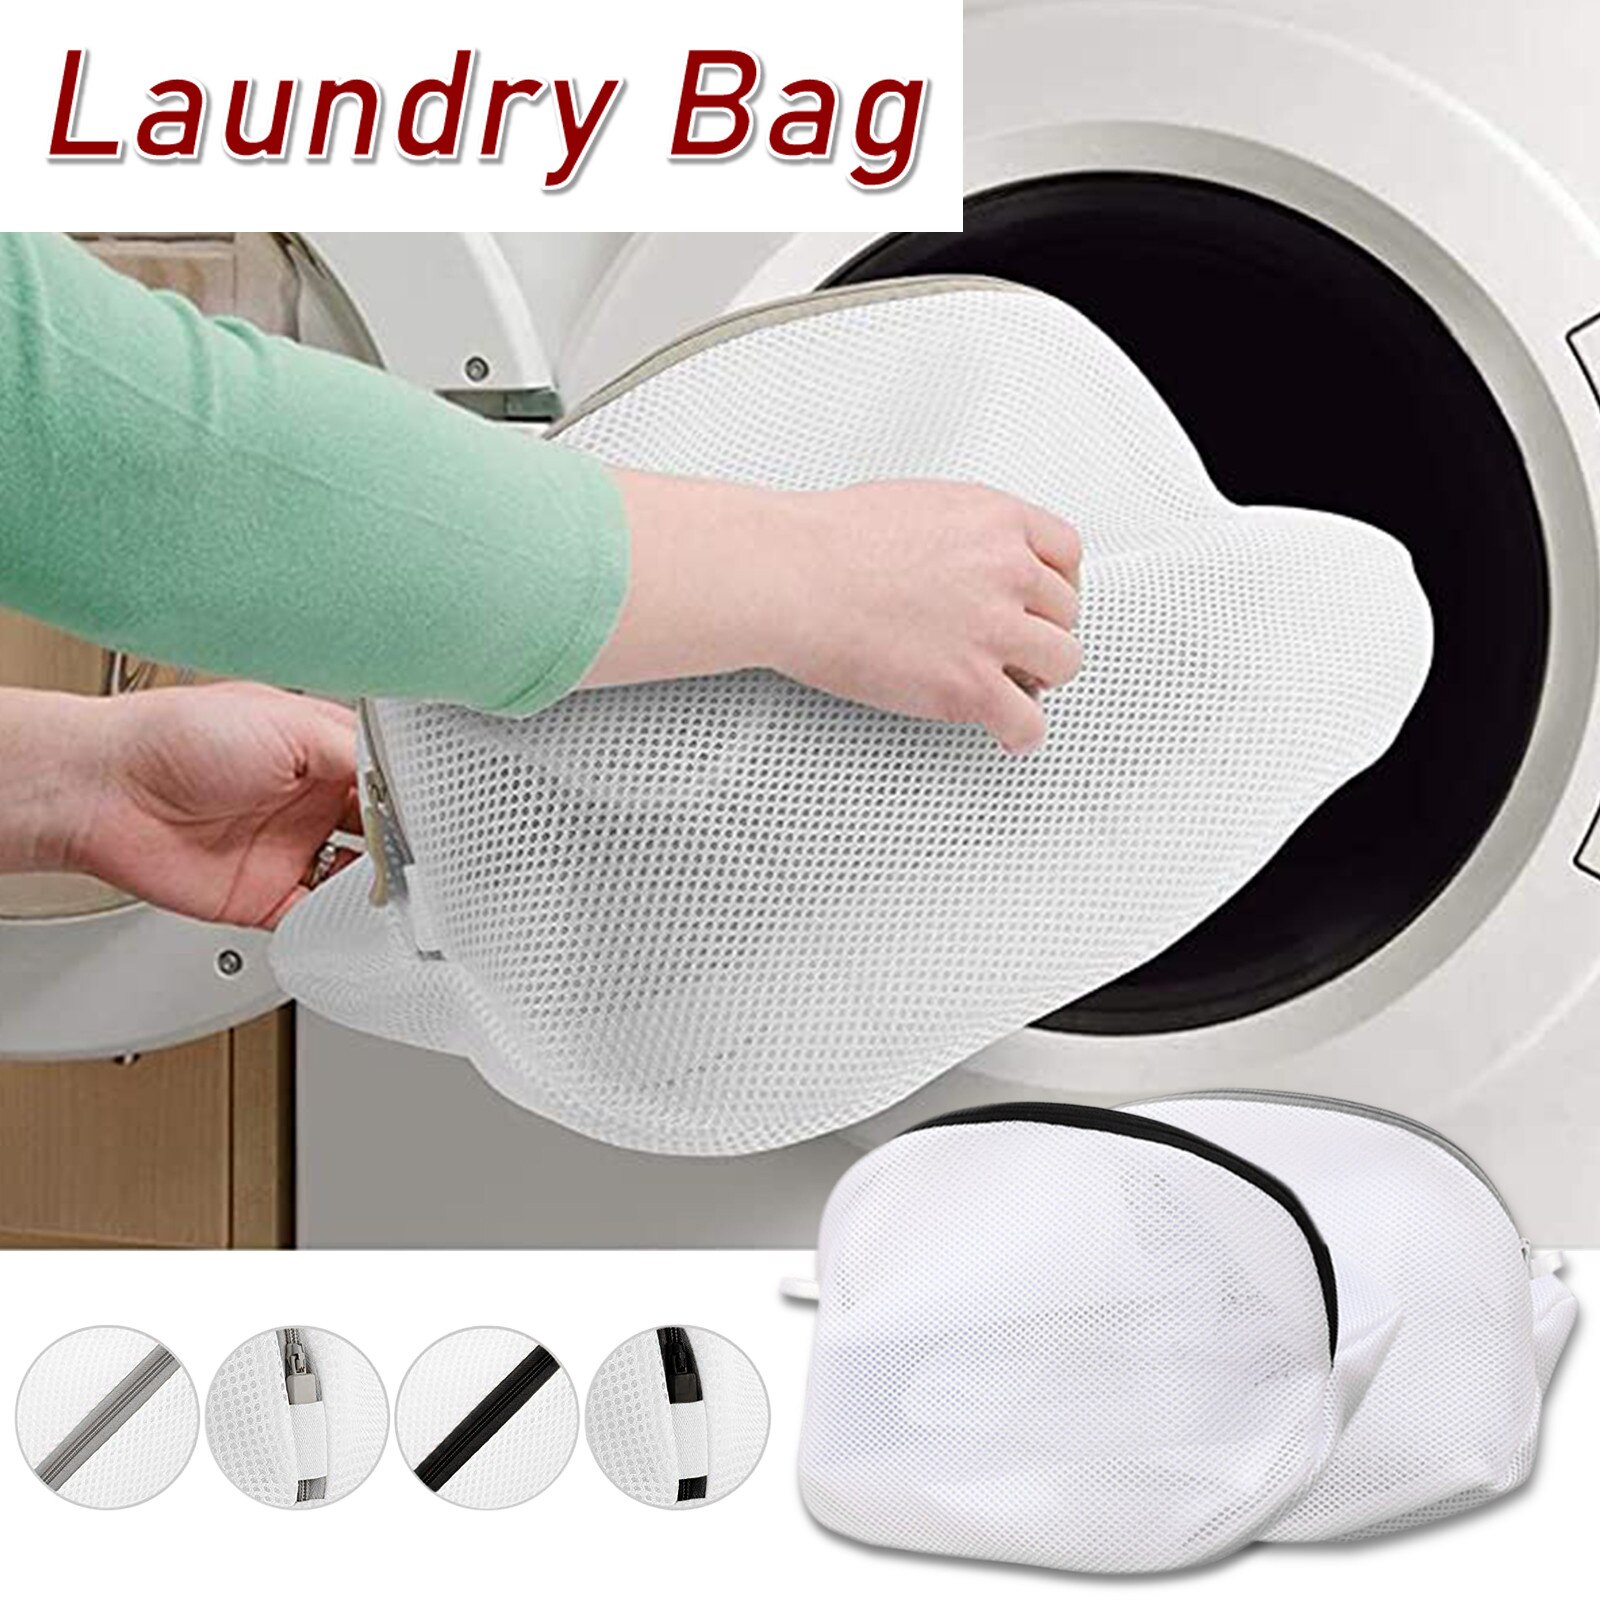 25 # Multi Bescherming Wasserij Netto Waszak Voor Wasmachine En Reizen Ondergoed Beha Ondergoed Wasmachine Kleding